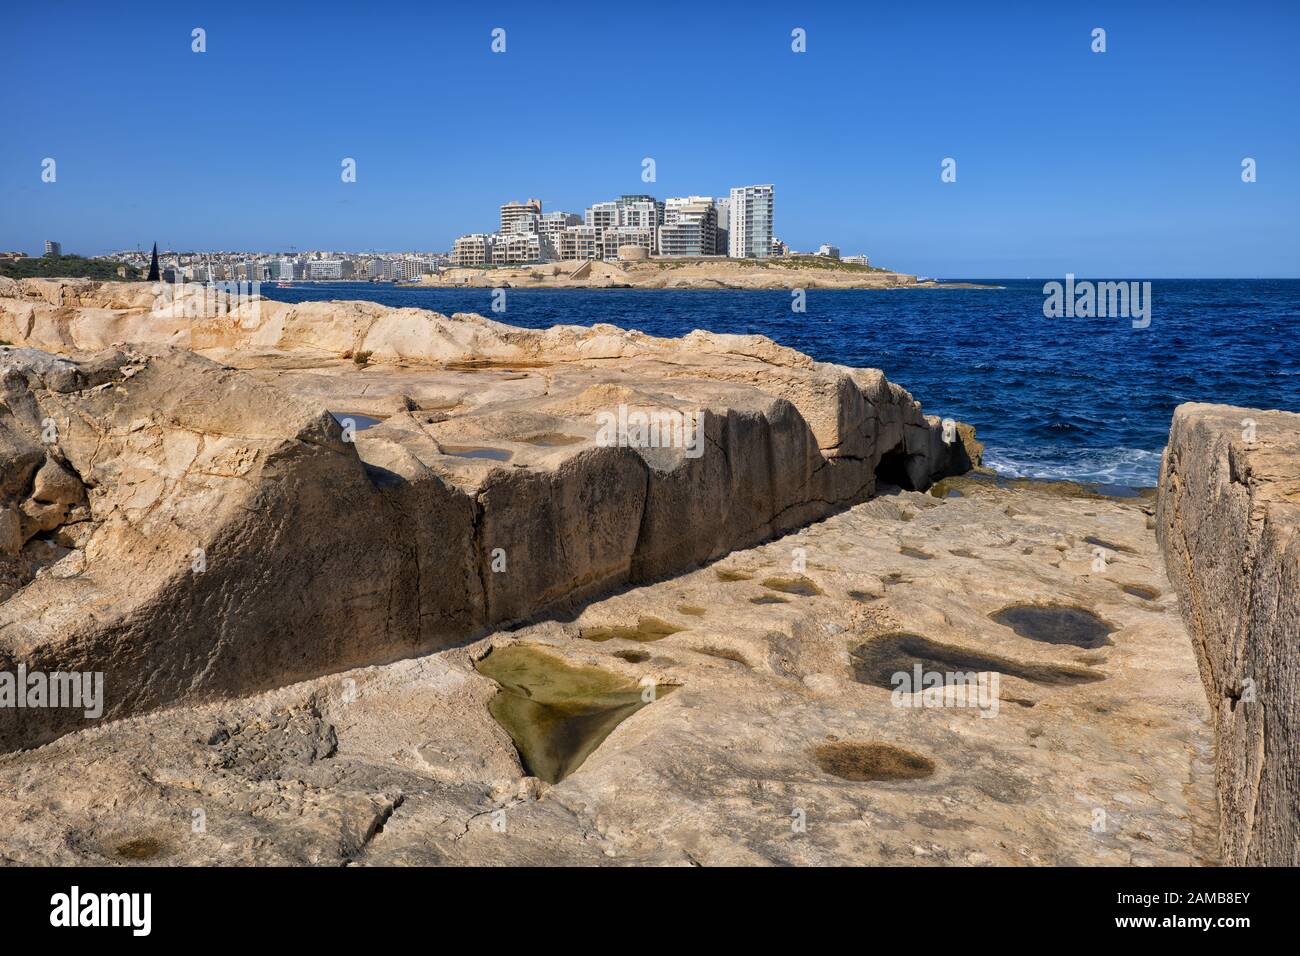 Valette bord de mer à Malte, cale (rampe ou lancement de bateau, déployeur de bateau) à la mer sculpté dans la rive rocheuse avec la ville de Sliema à l'horizon Banque D'Images